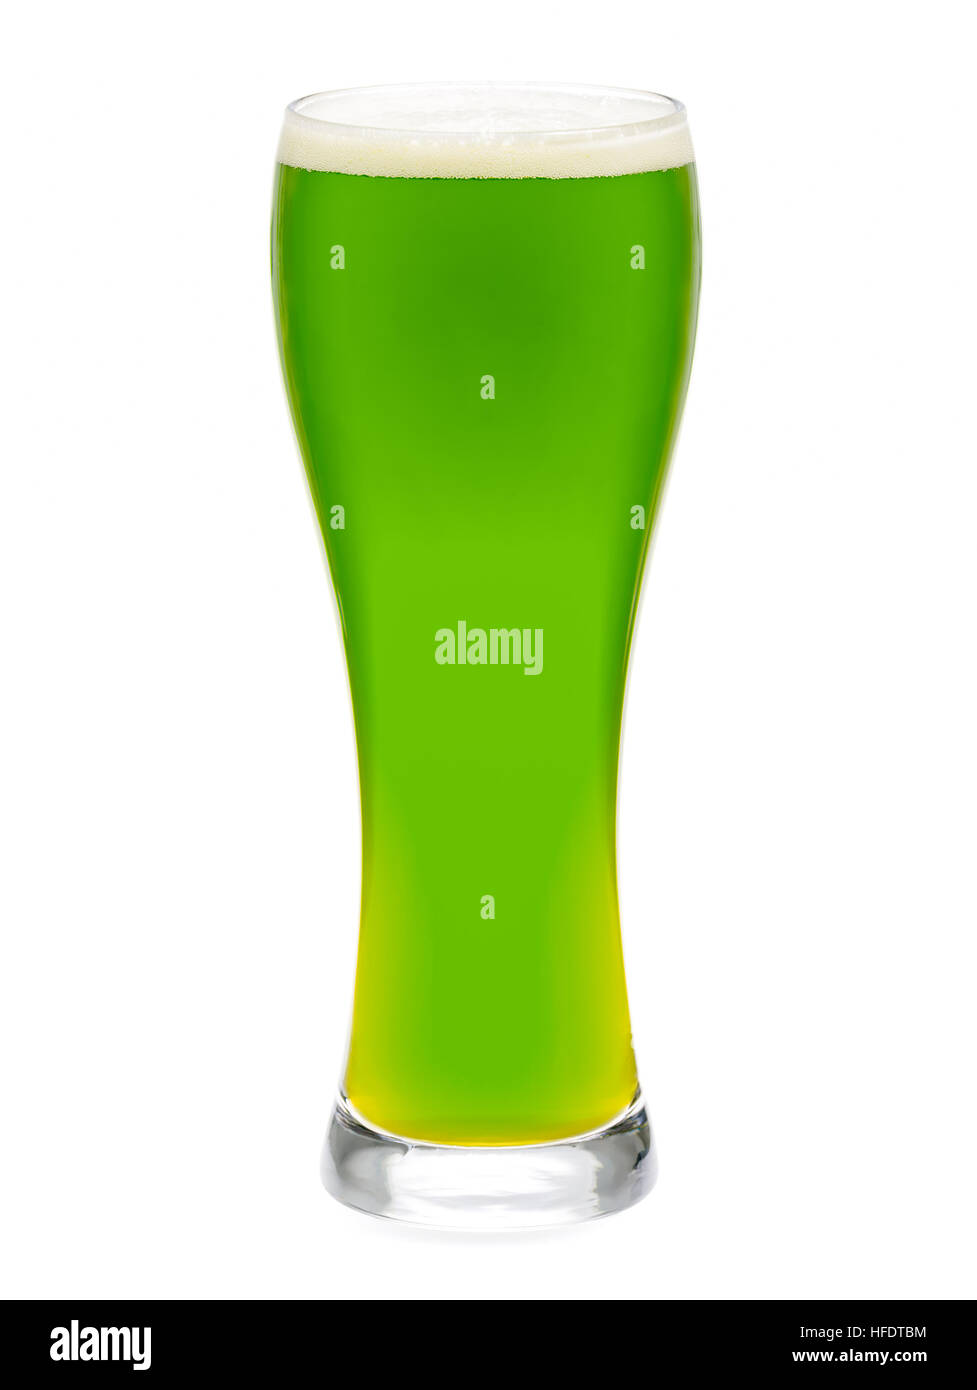 Volles Glas grüne Ale Selebrate St. Patricks Day isoliert auf weißem Hintergrund Stockfoto